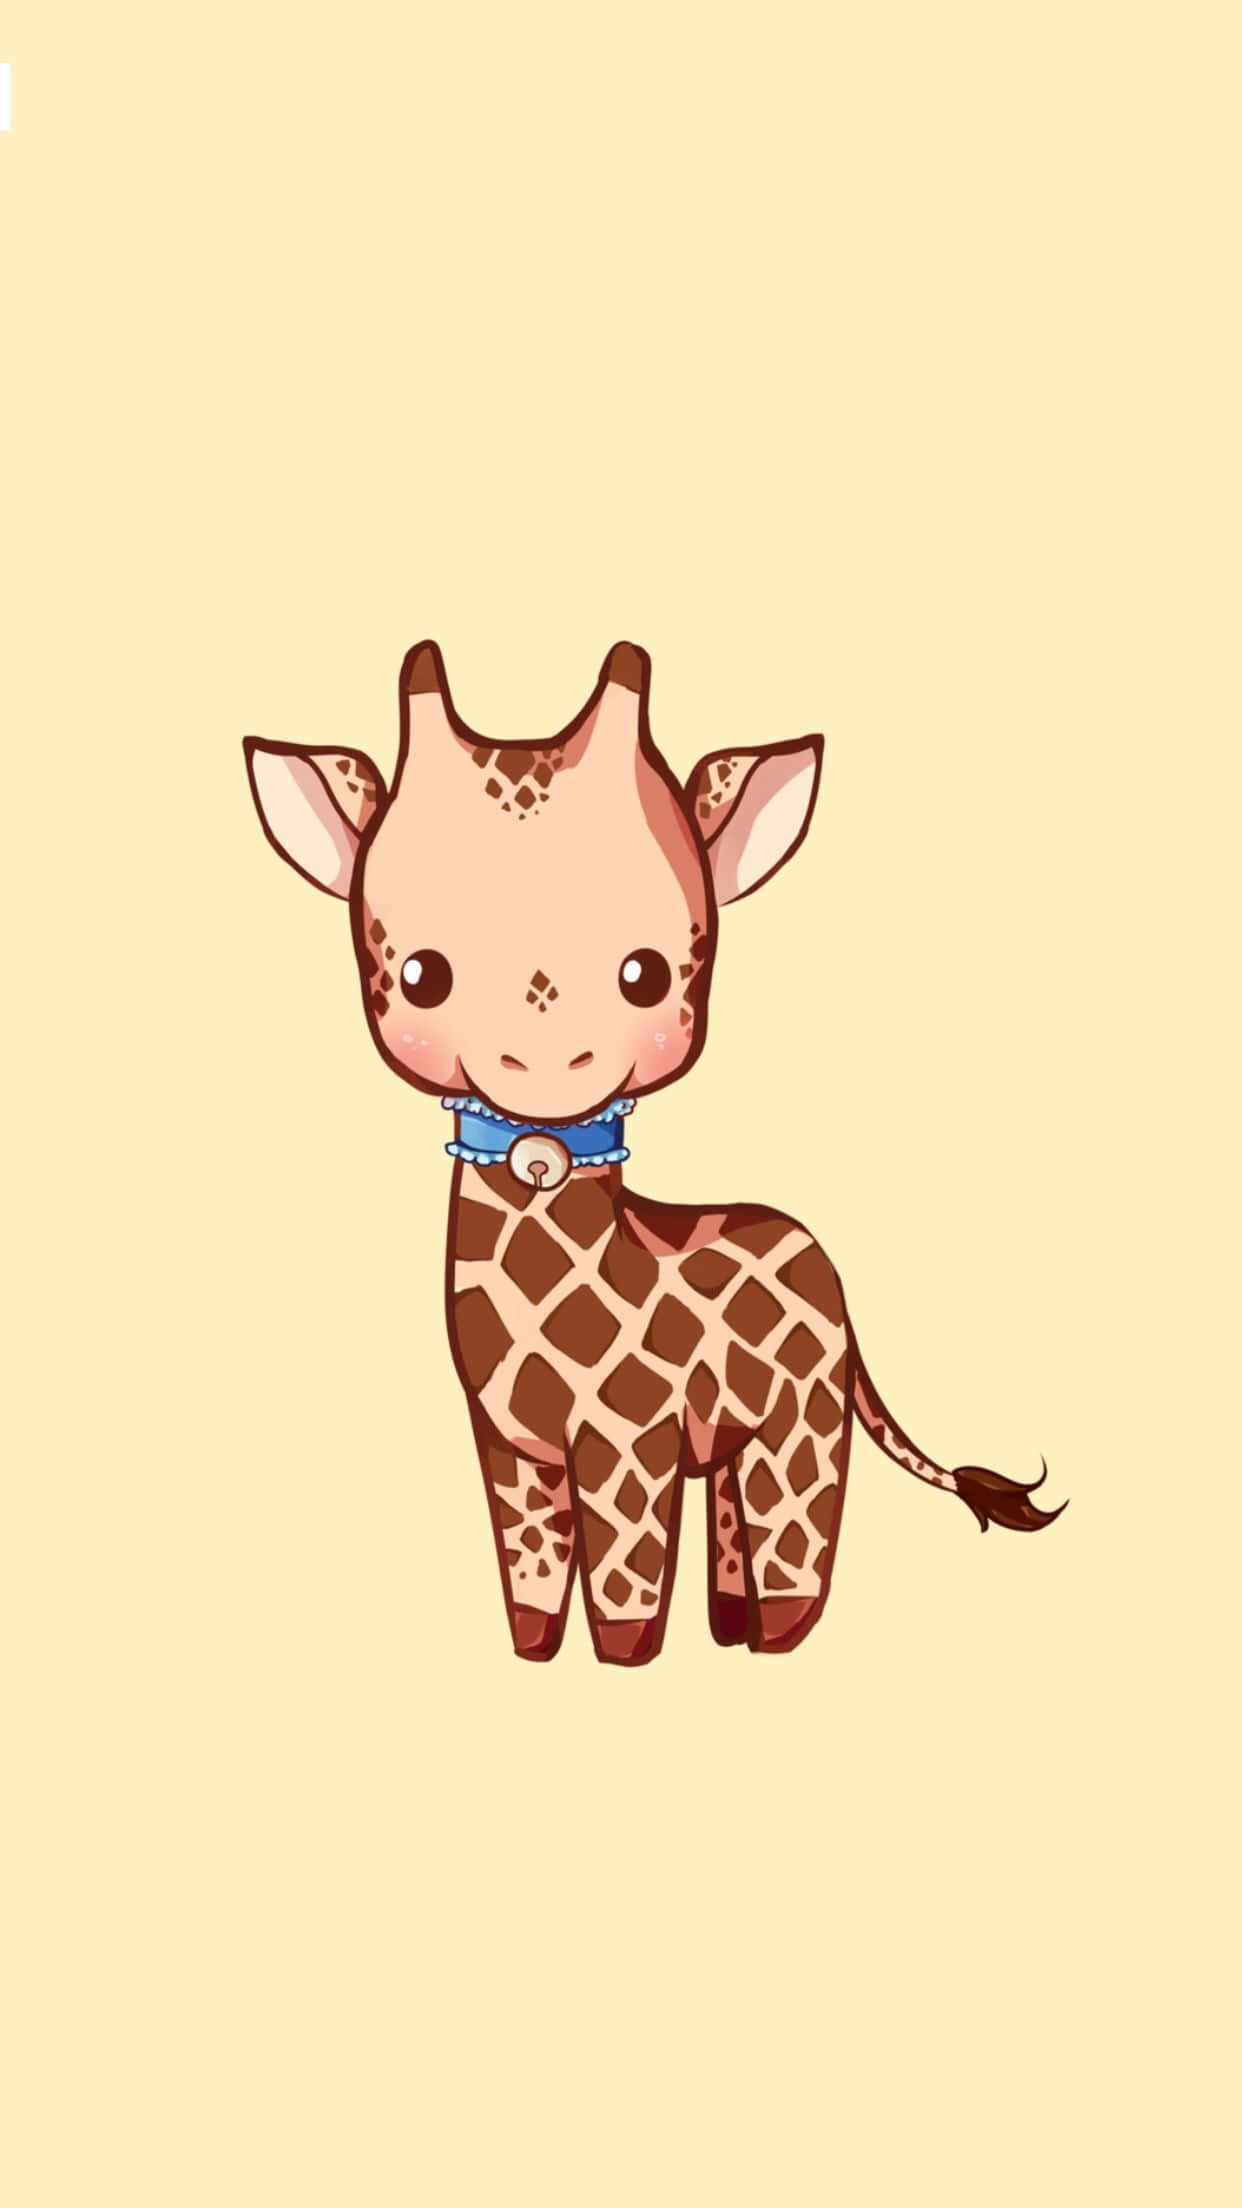 "Adorable Baby Giraffe"